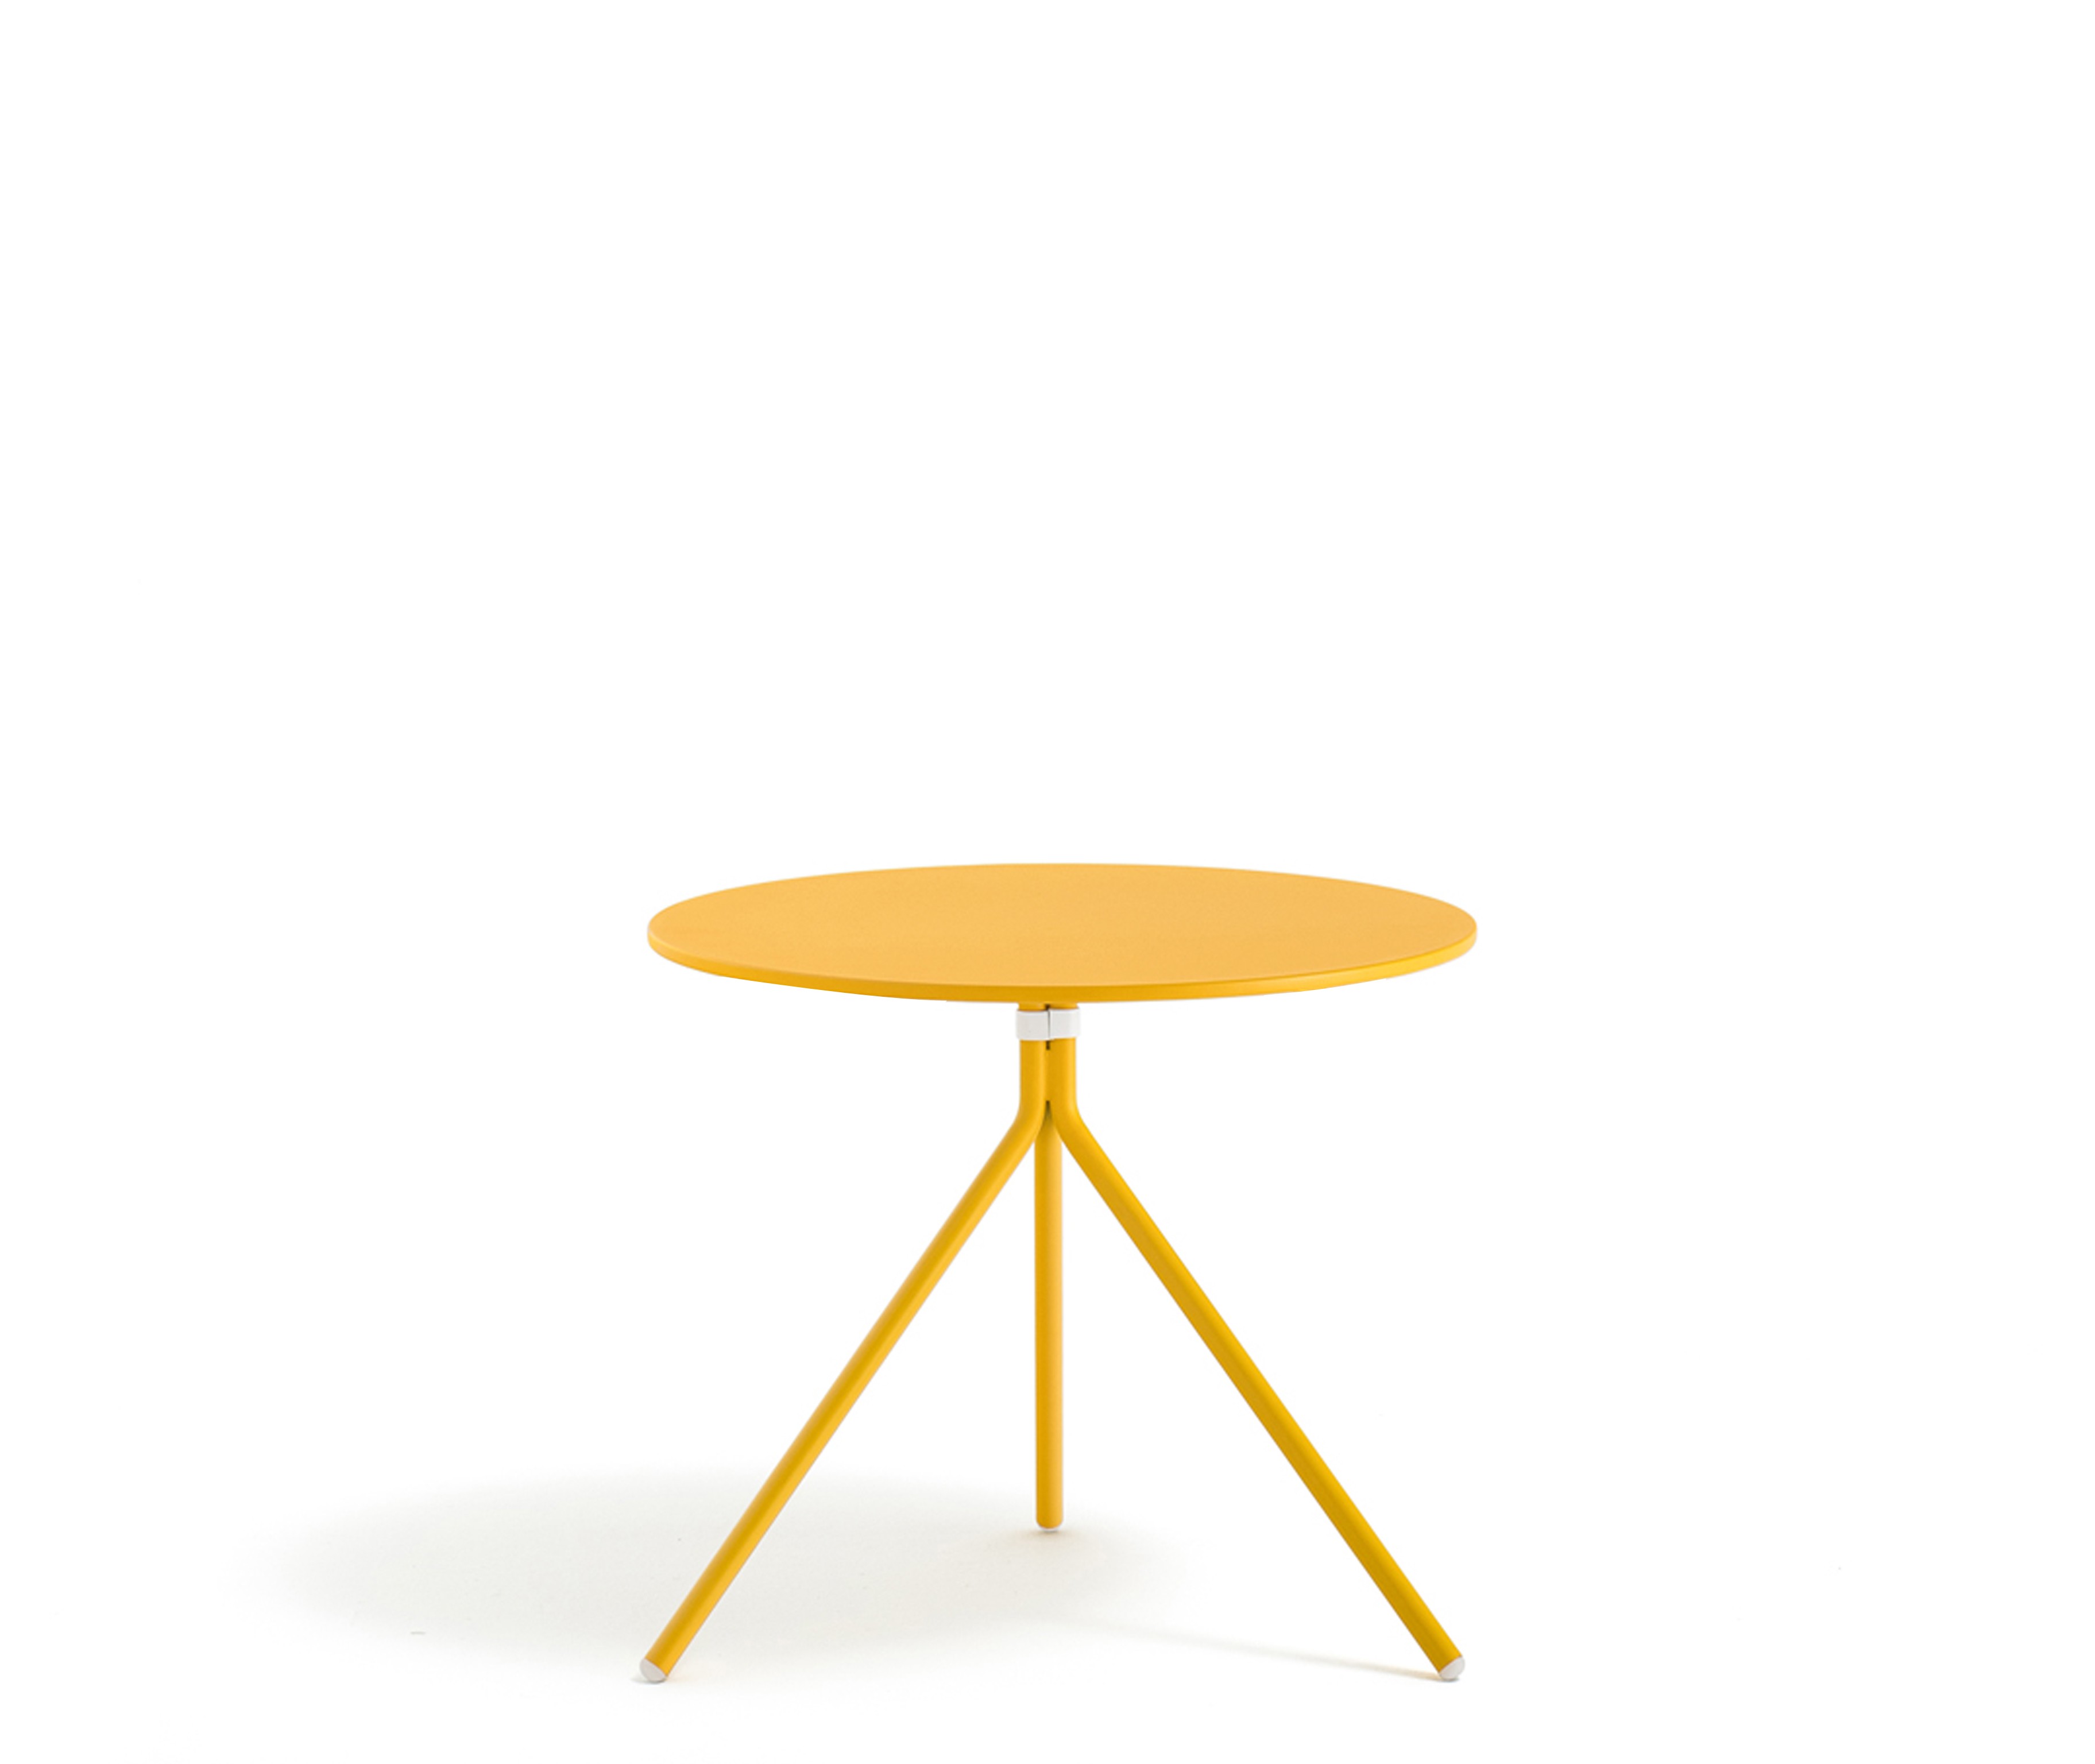 Beistelltisch rund gelb Metall, Mettaltisch rund gelb, Tisch klappbar Metall, Durchmesser 65 cm